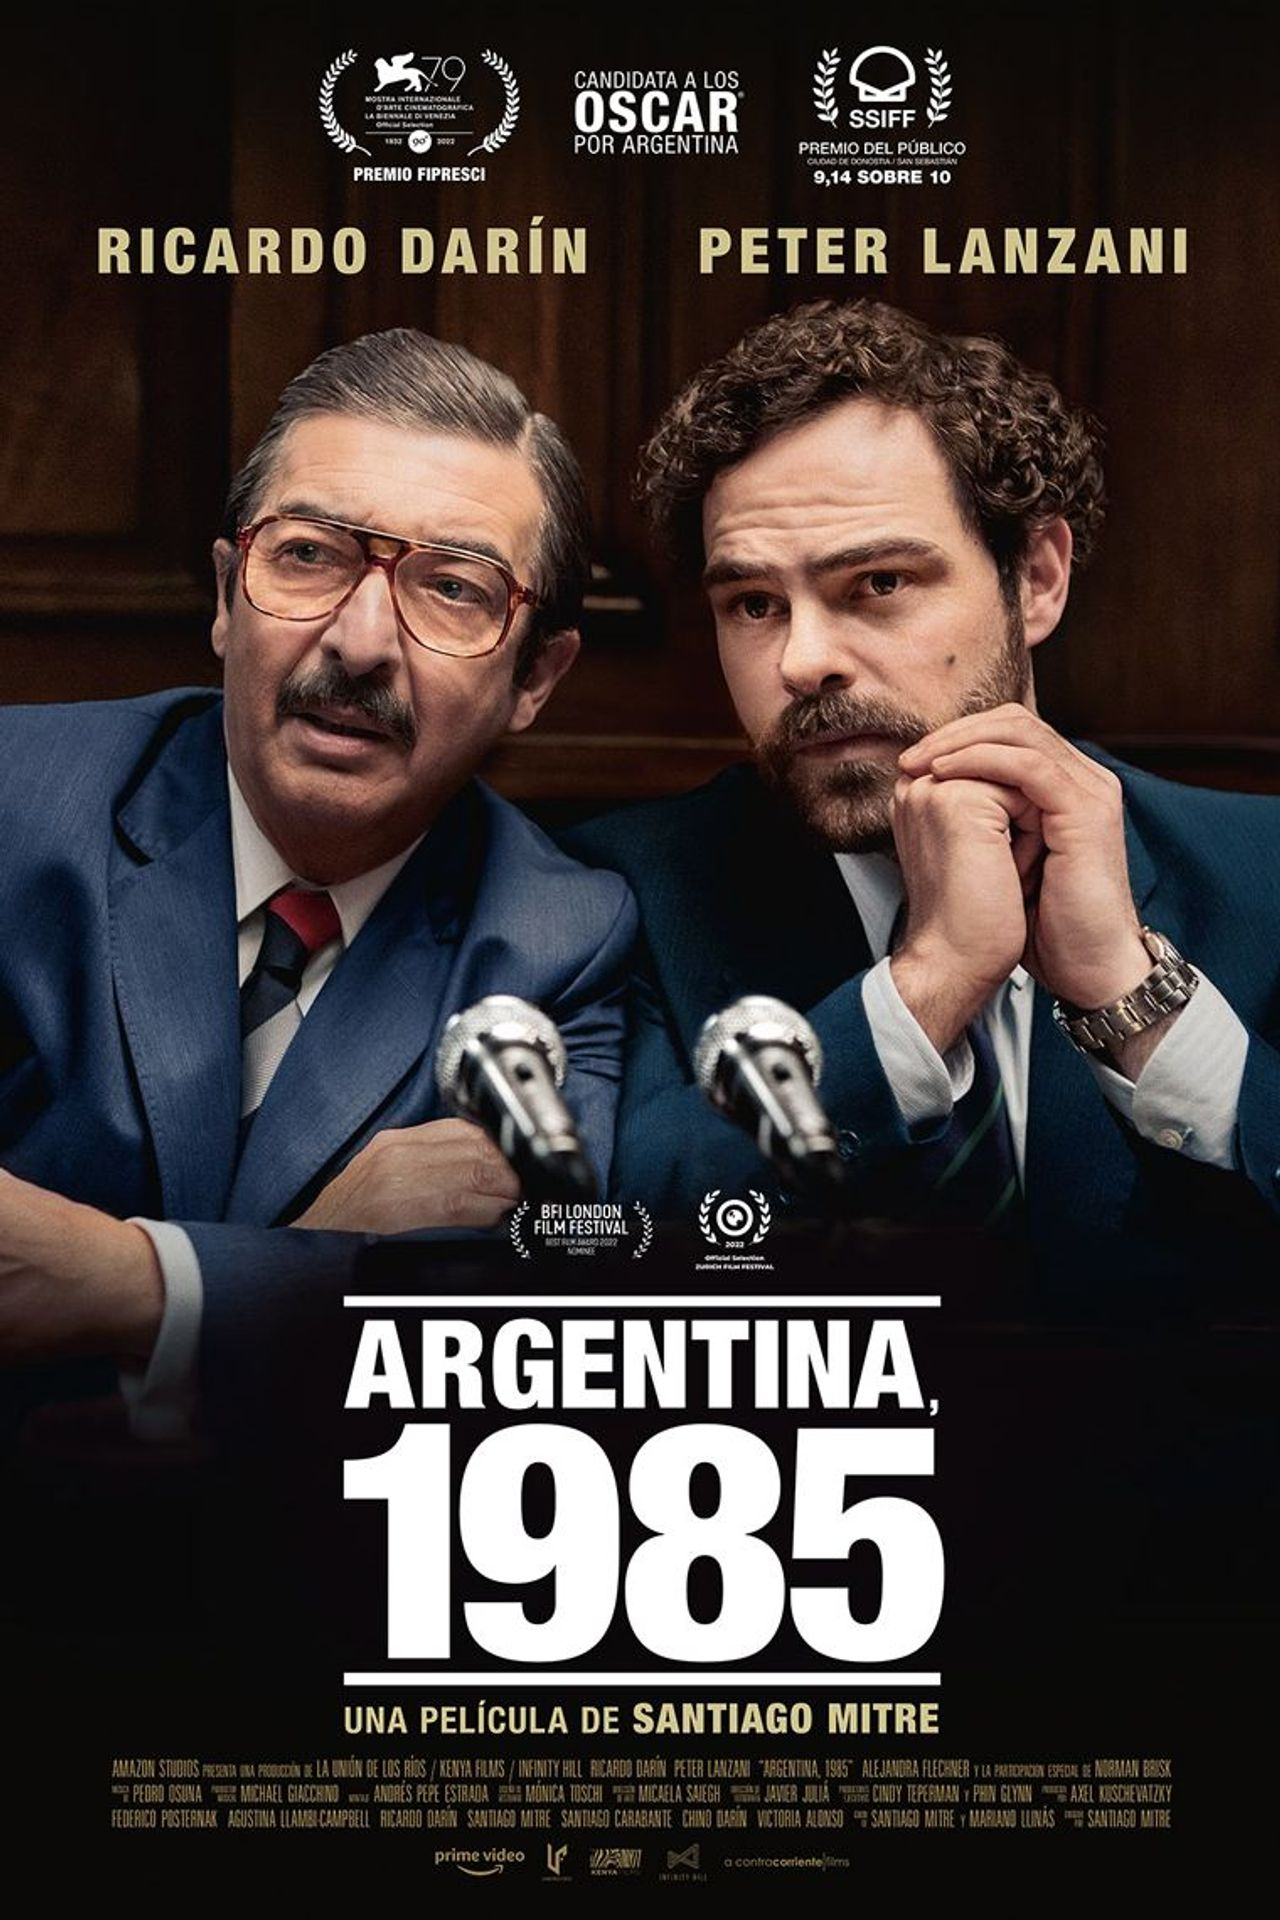 A campanha do filme "Argentina 1985" em busca do Oscar